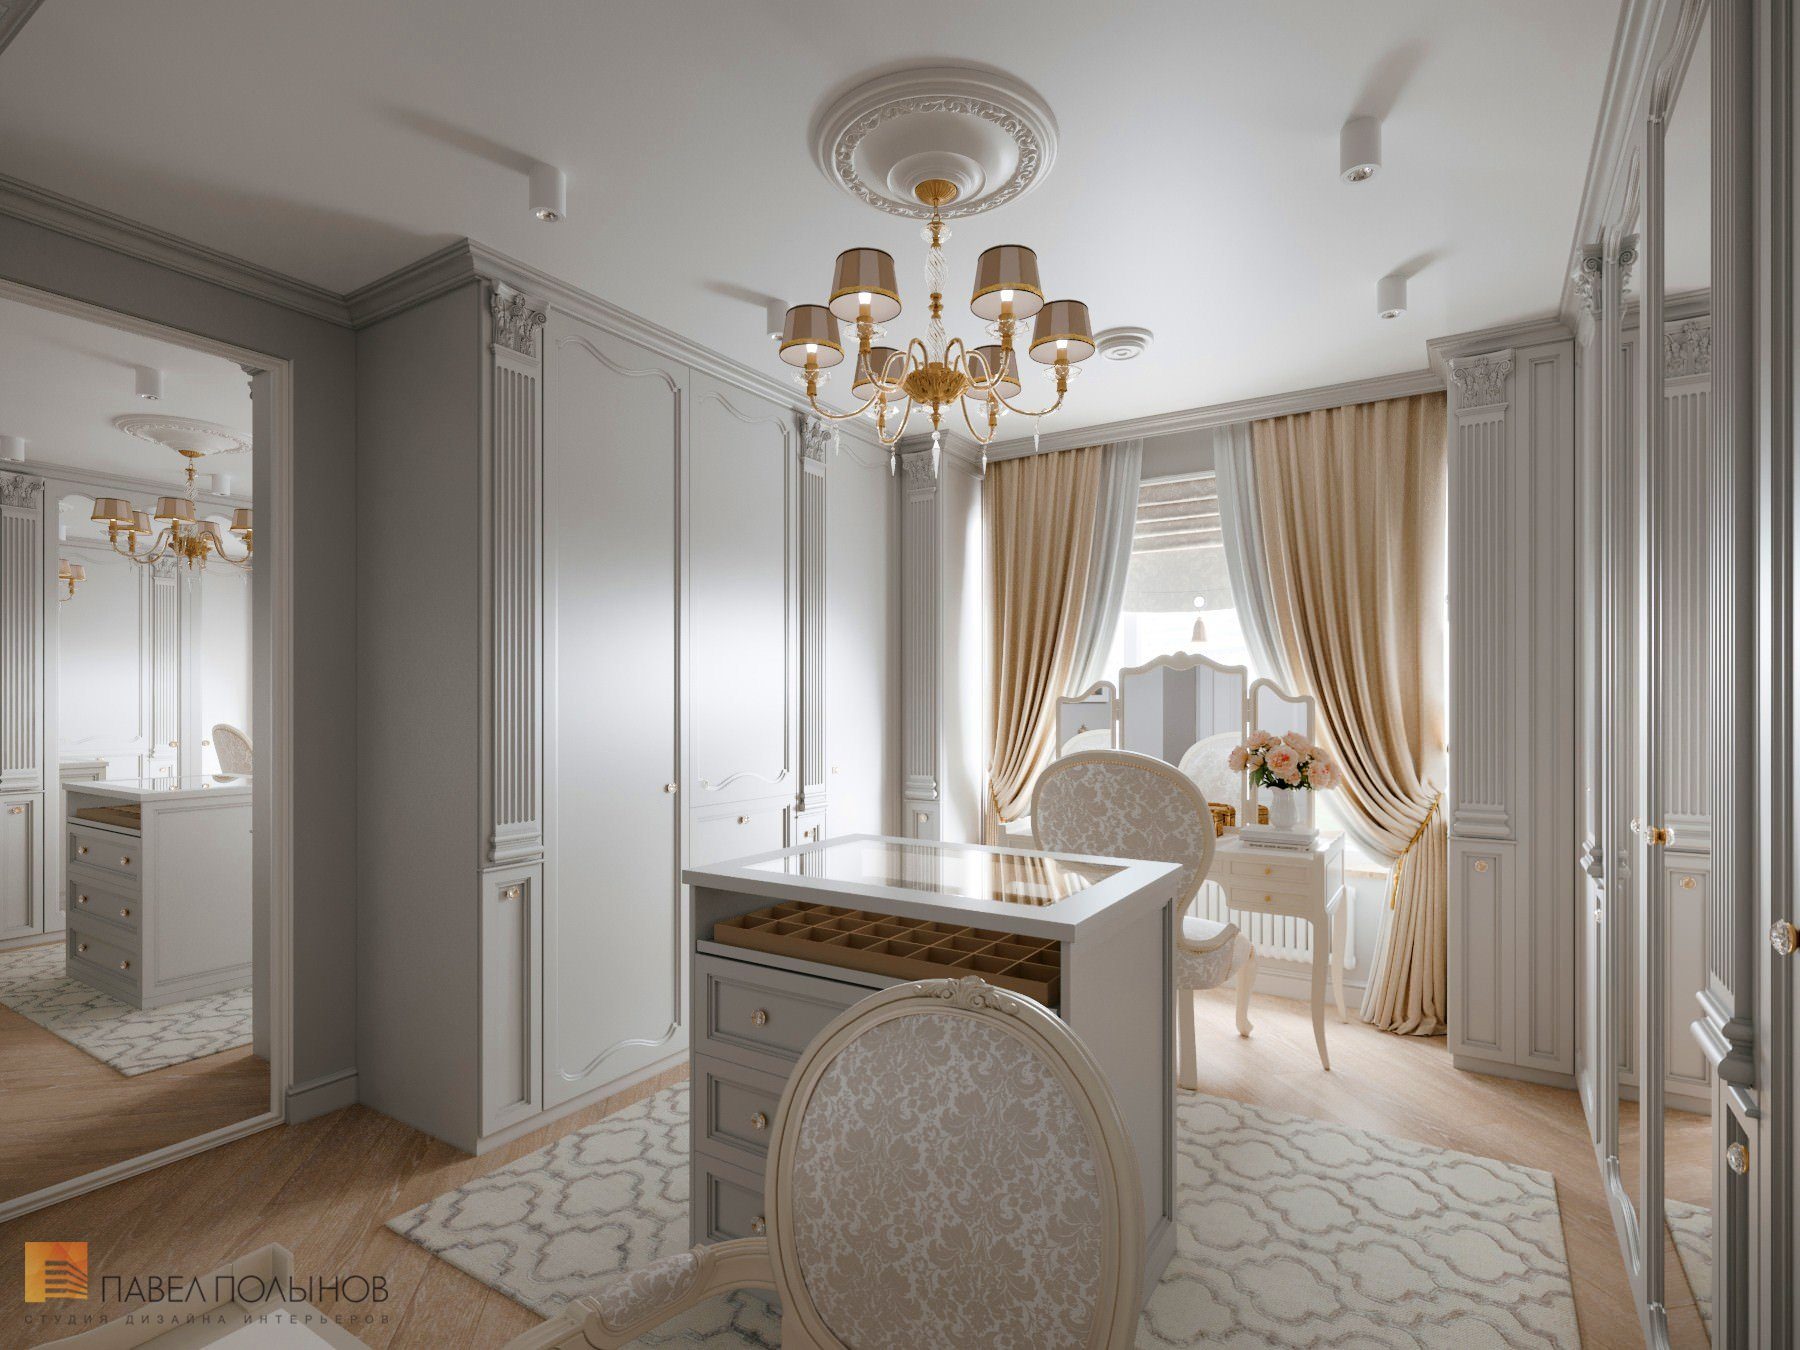 Интерьер квартиры в классическом стиле элегантен, спокоен и полон благородства.